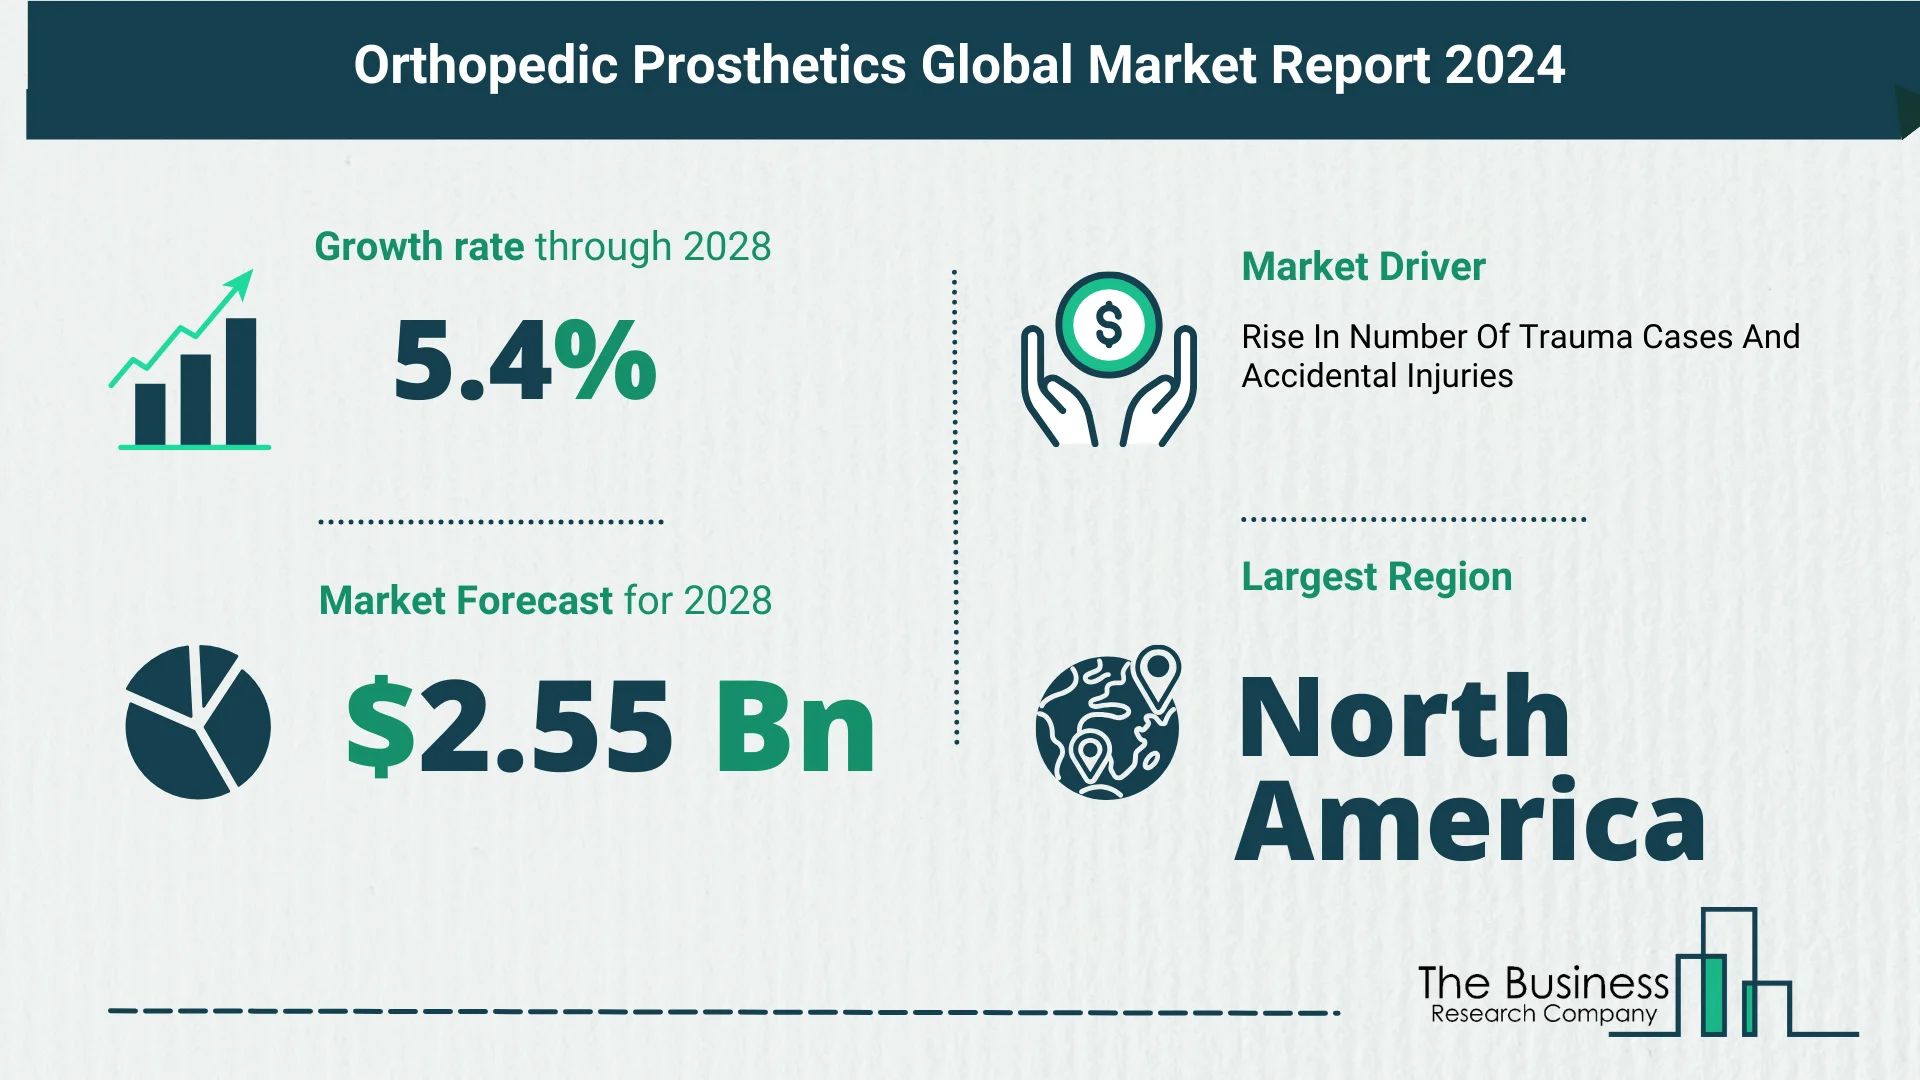 Global Orthopedic Prosthetics Market Size